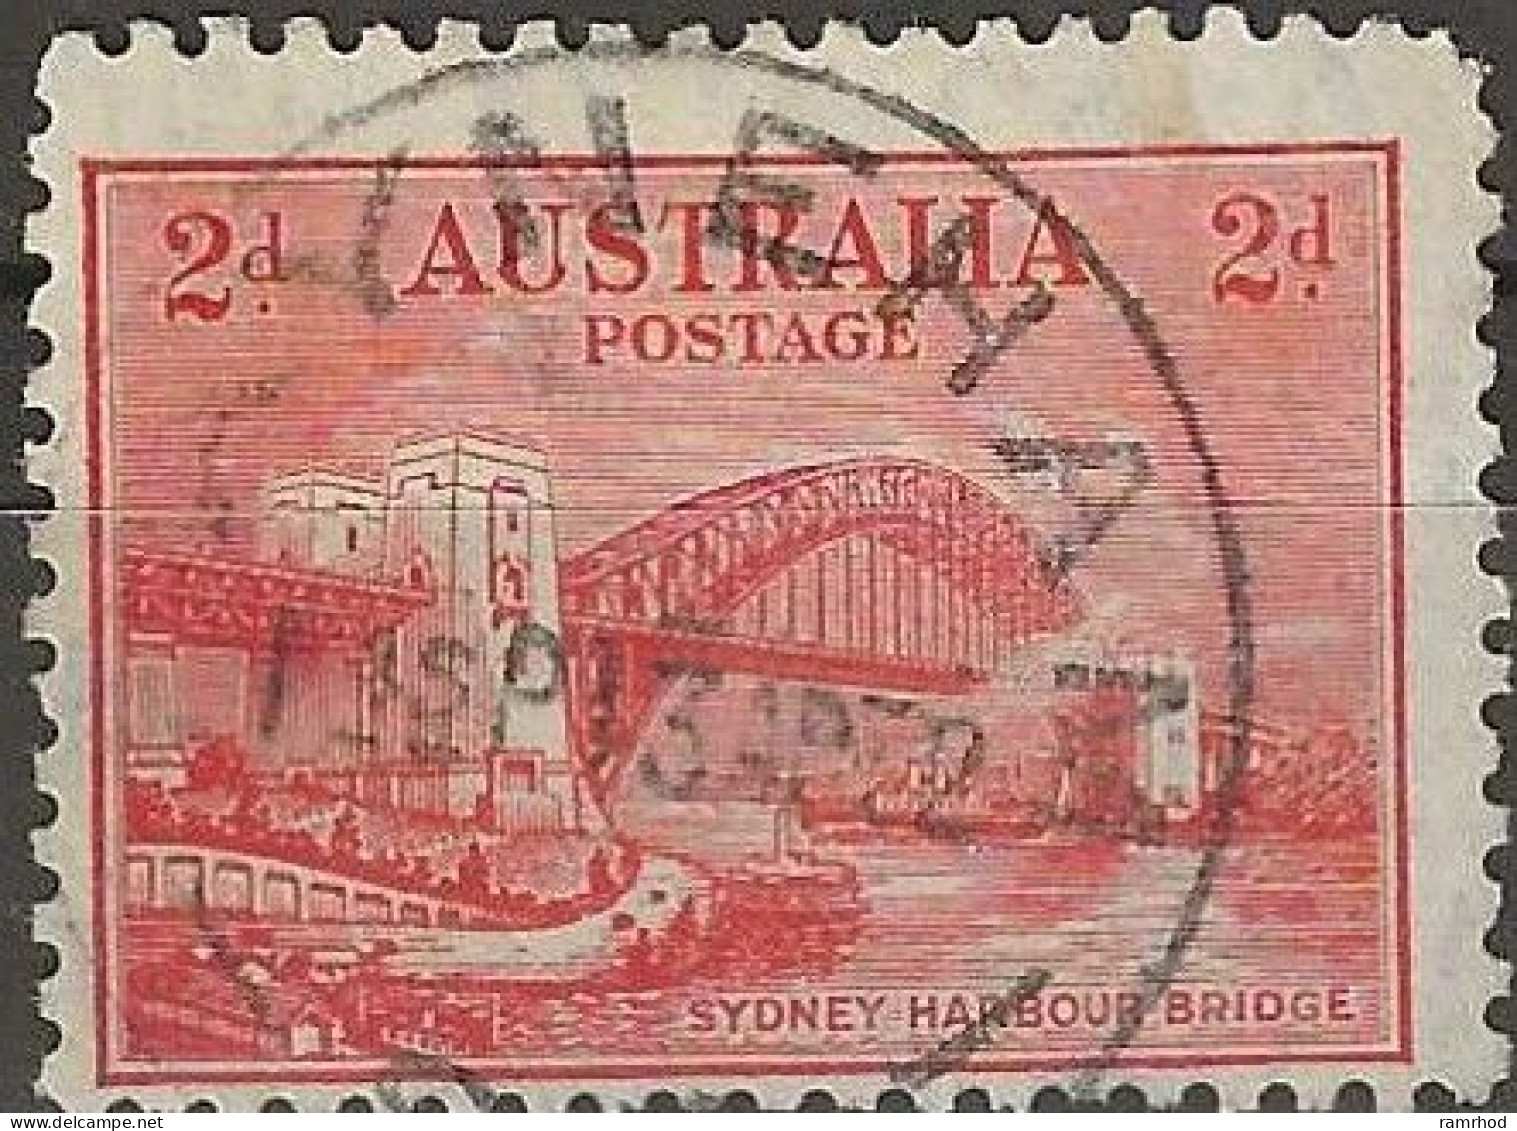 AUSTRALIA 1932 Opening Of Sydney Harbour Bridge - 2d Sydney Harbour Bridge FU - Oblitérés